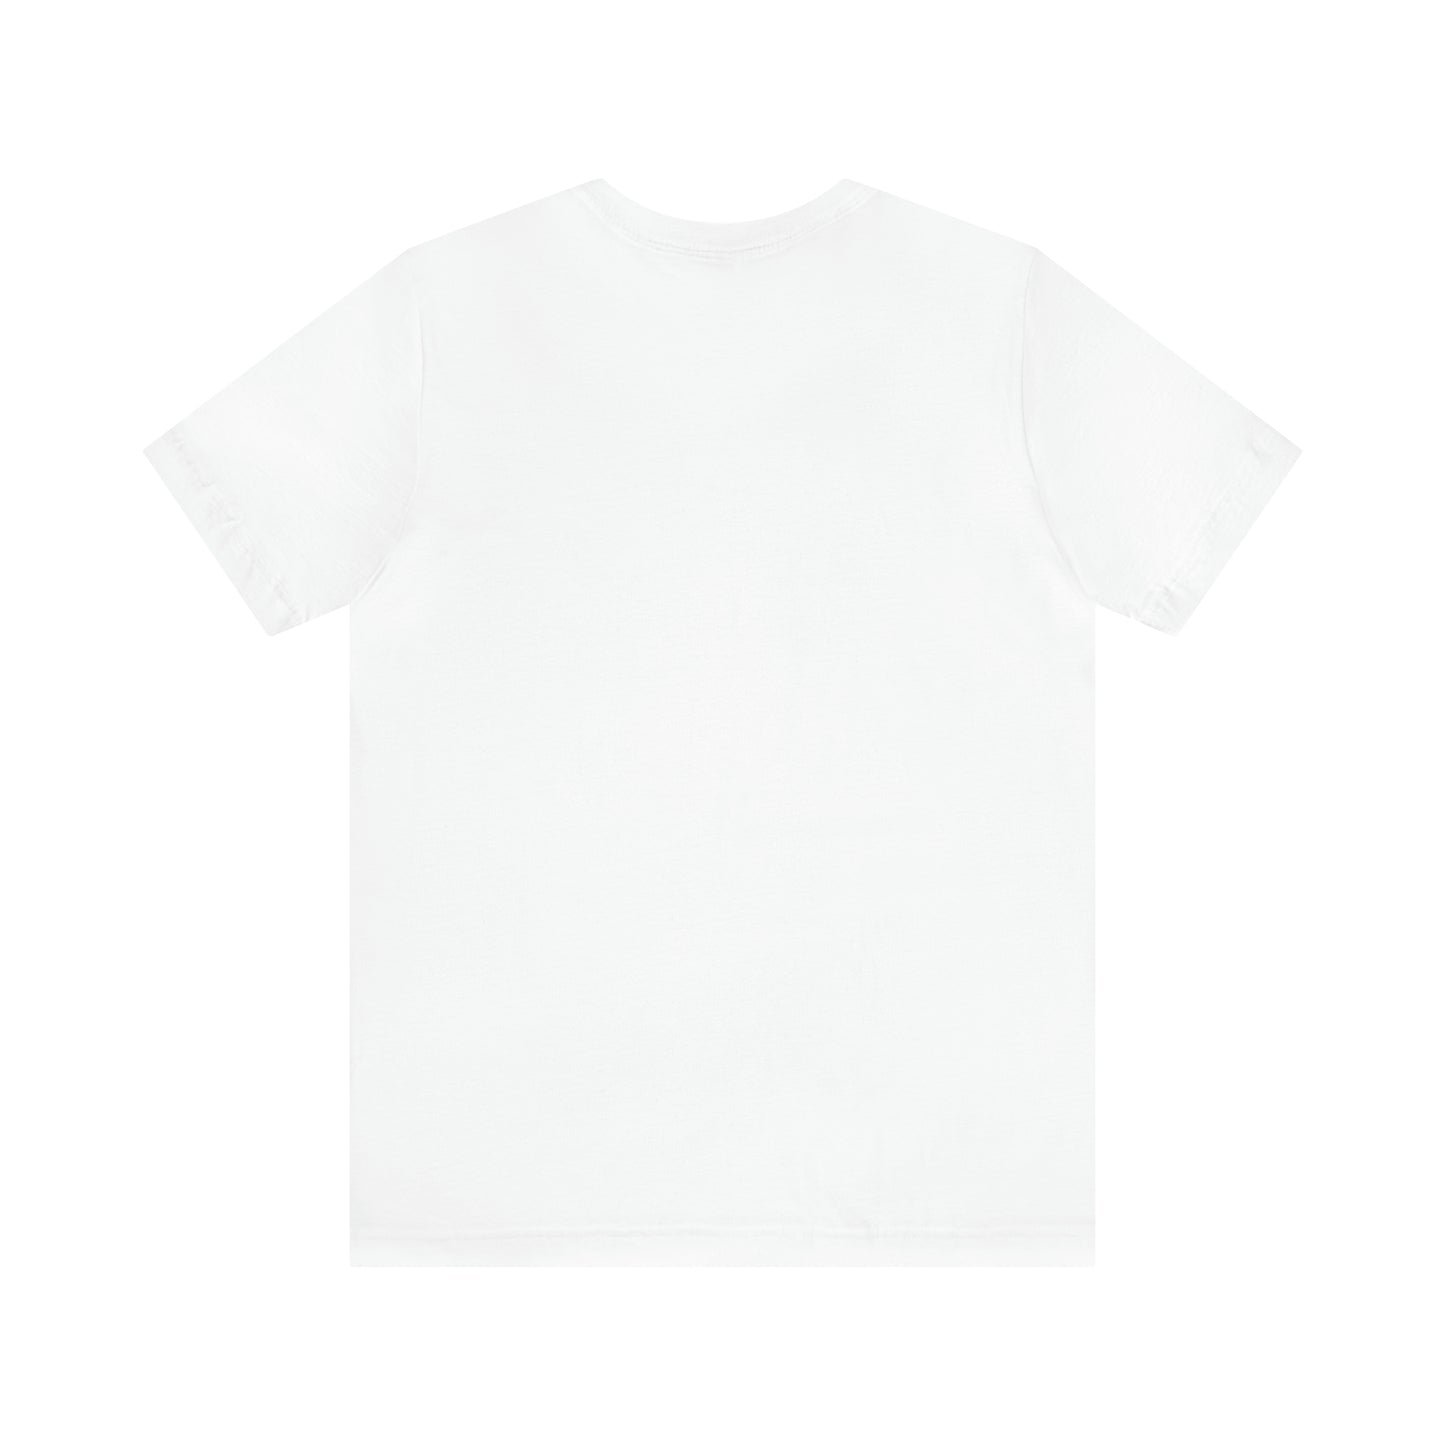 KISHI JUZ Unisex T-Shirt